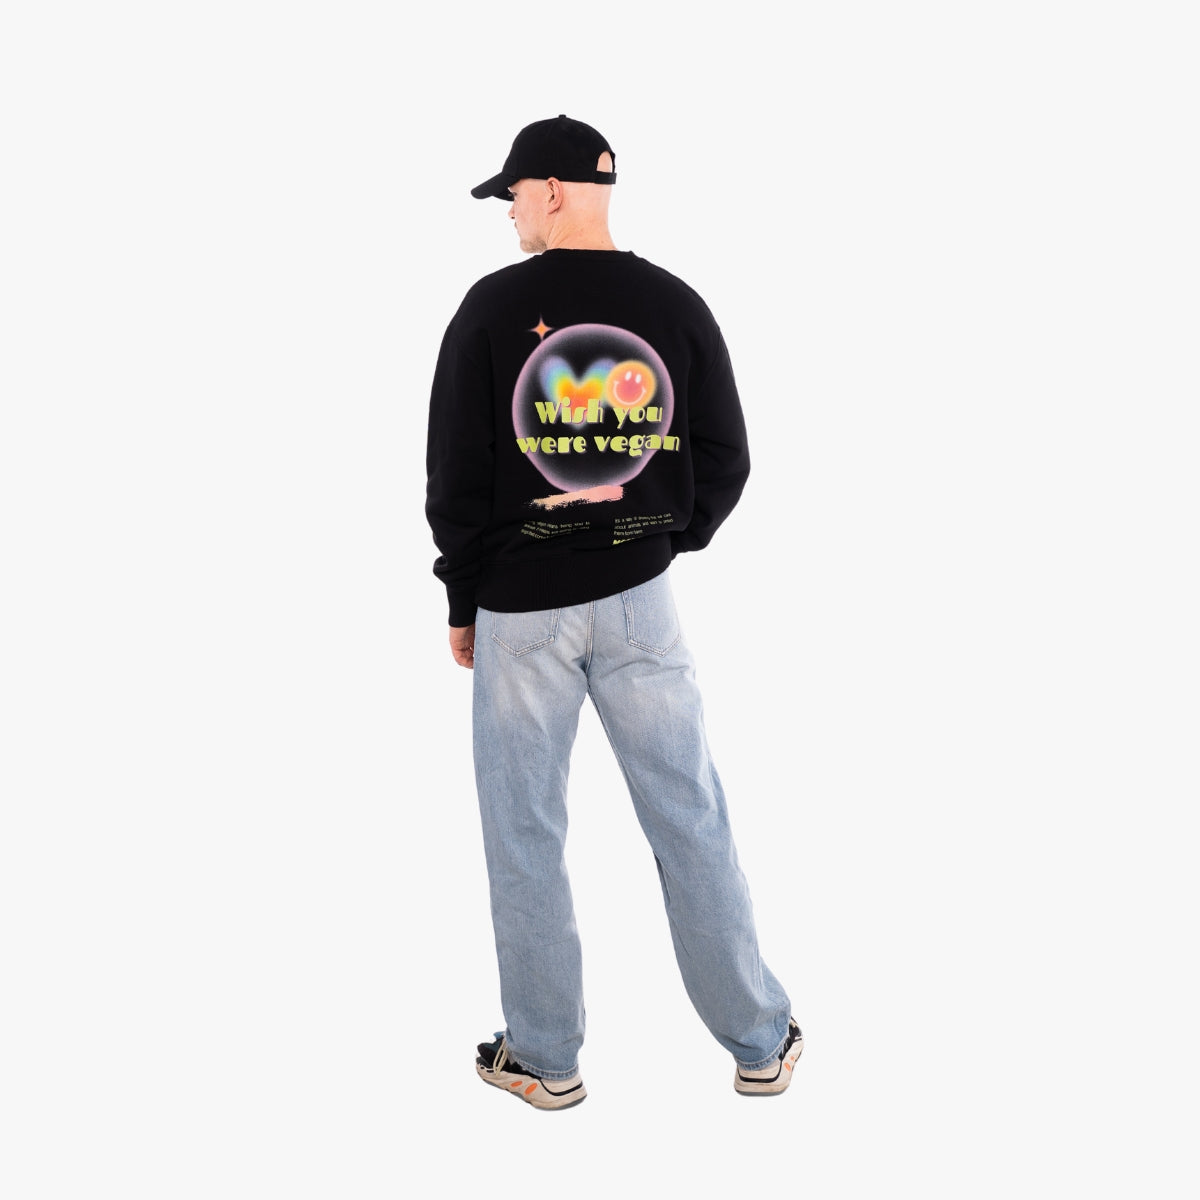 'WHISH YOU' Organic Oversize Sweatshirt in der Farbe Black als Back Komplettaufnahme getragen von einem männlichen Model